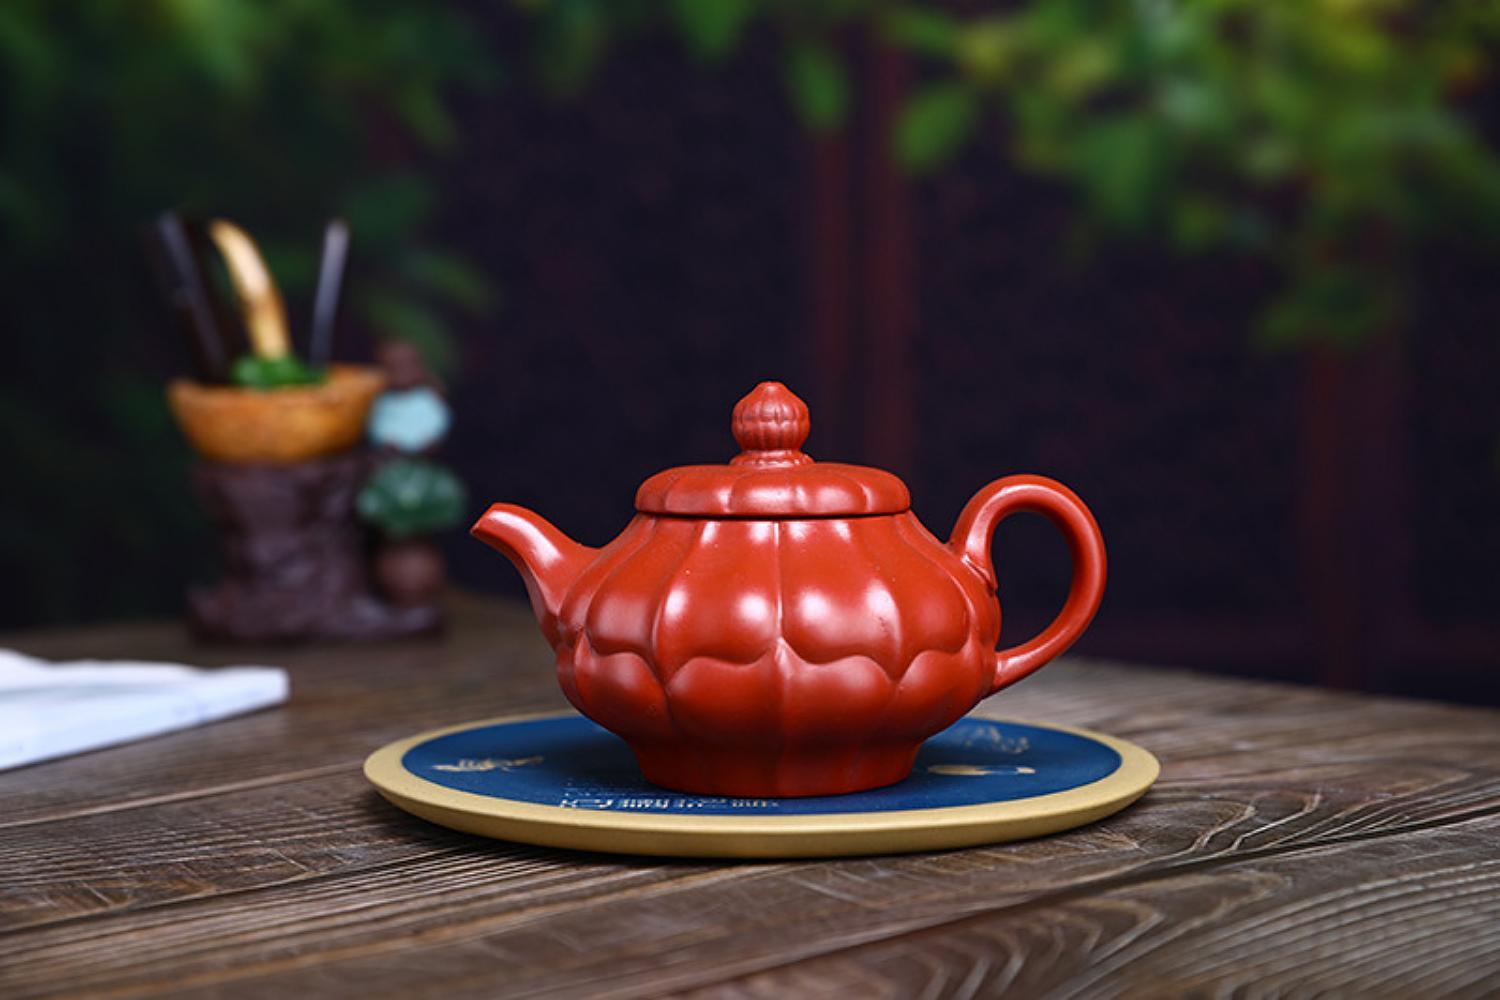 Čínská čajová konvice (Gao heling “Lotos“)-Čínská Yixing Zisha keramika